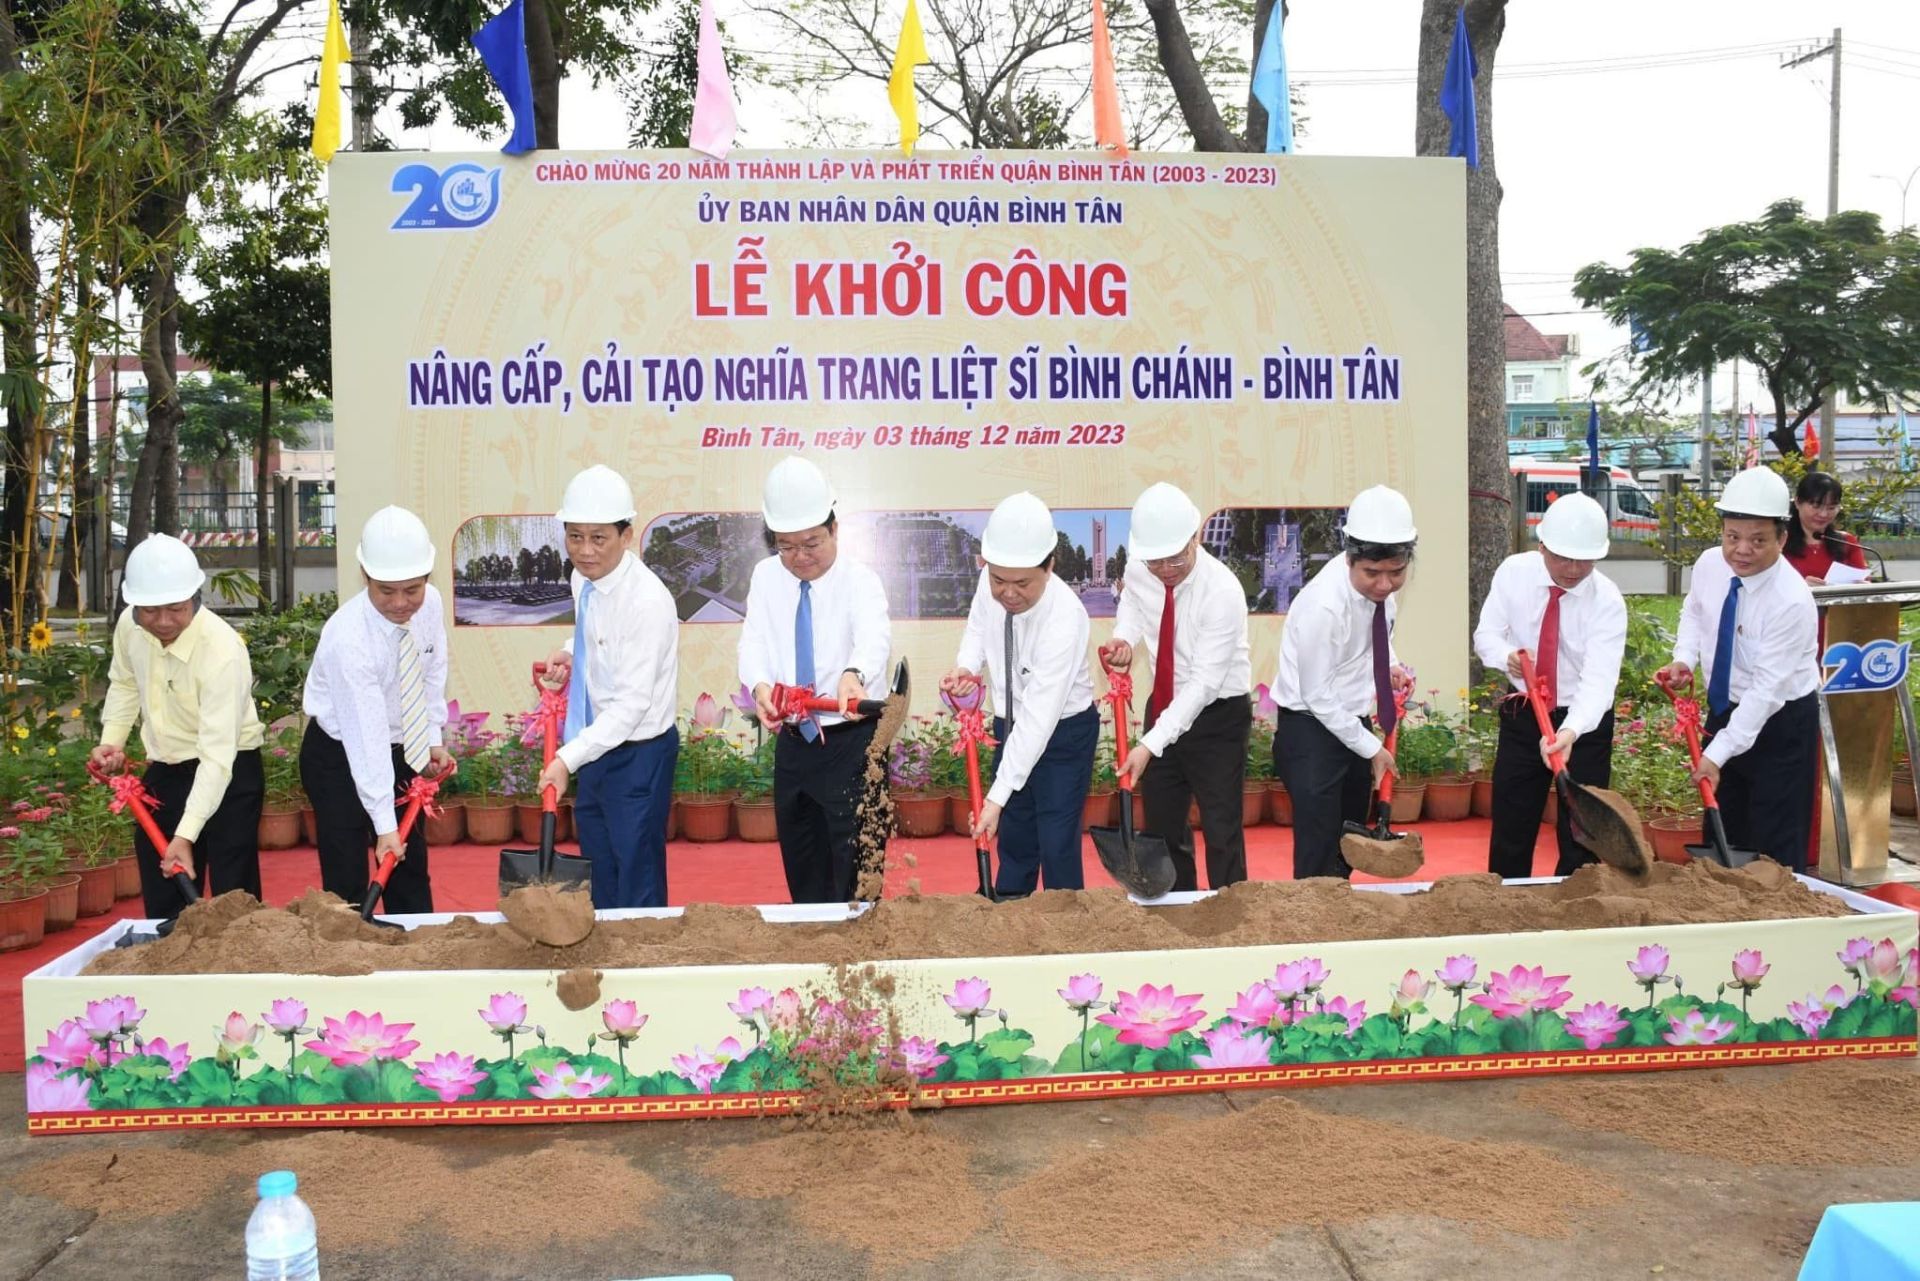 Lễ khởi công “Dự án đầu tư, nâng cấp nghĩa trang liệt sĩ Bình Chánh – Bình Tân”.